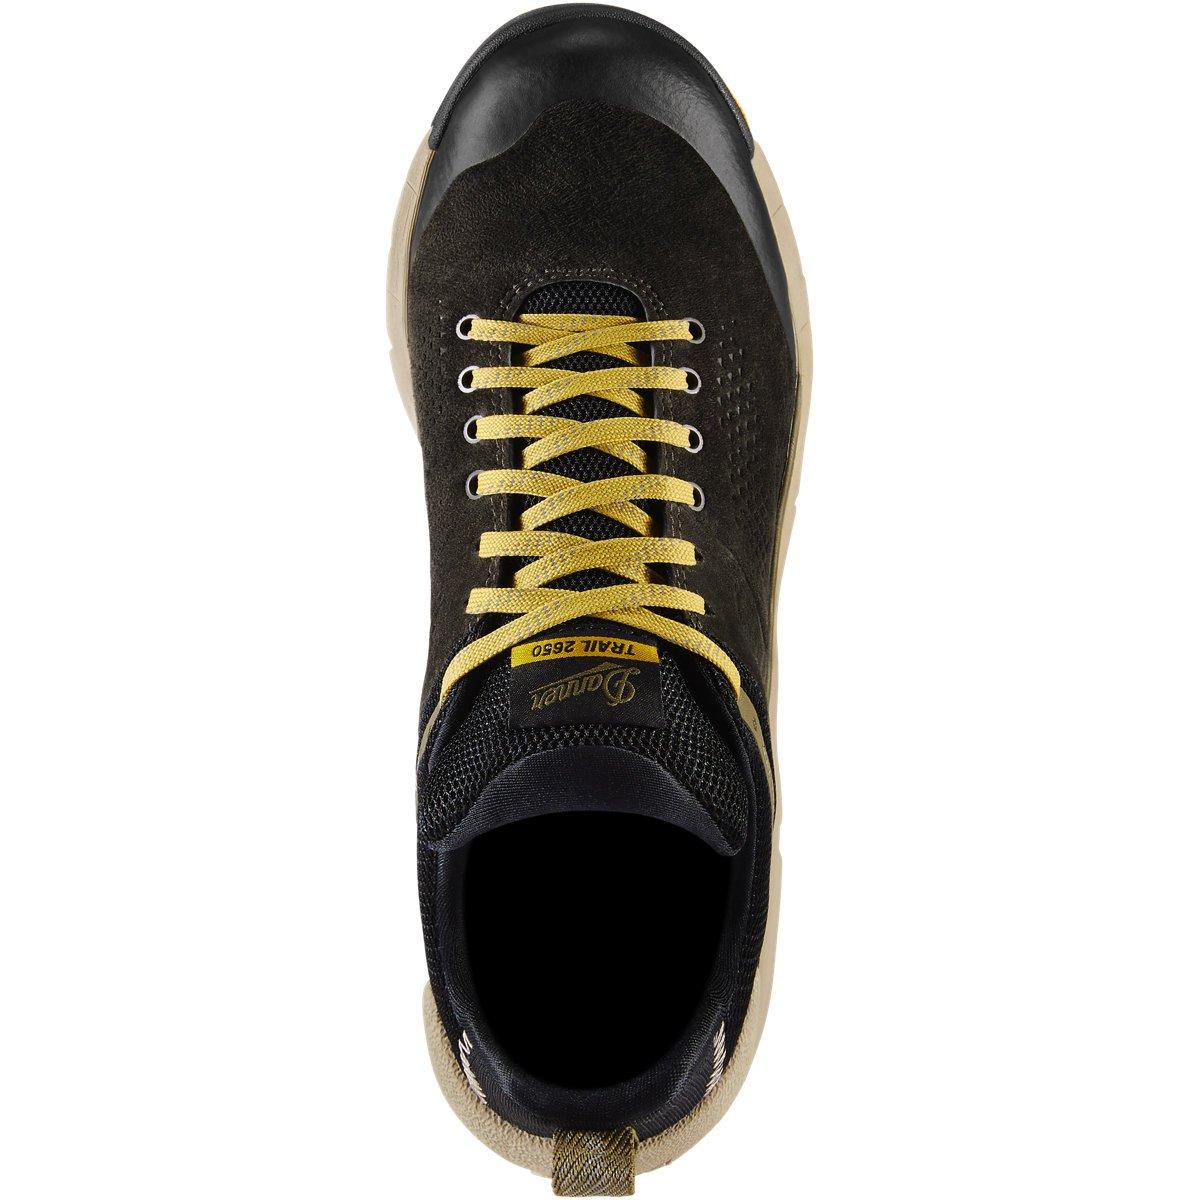 Danner Men's Trail 2650 Gore-Tex Shoes - Black Olive